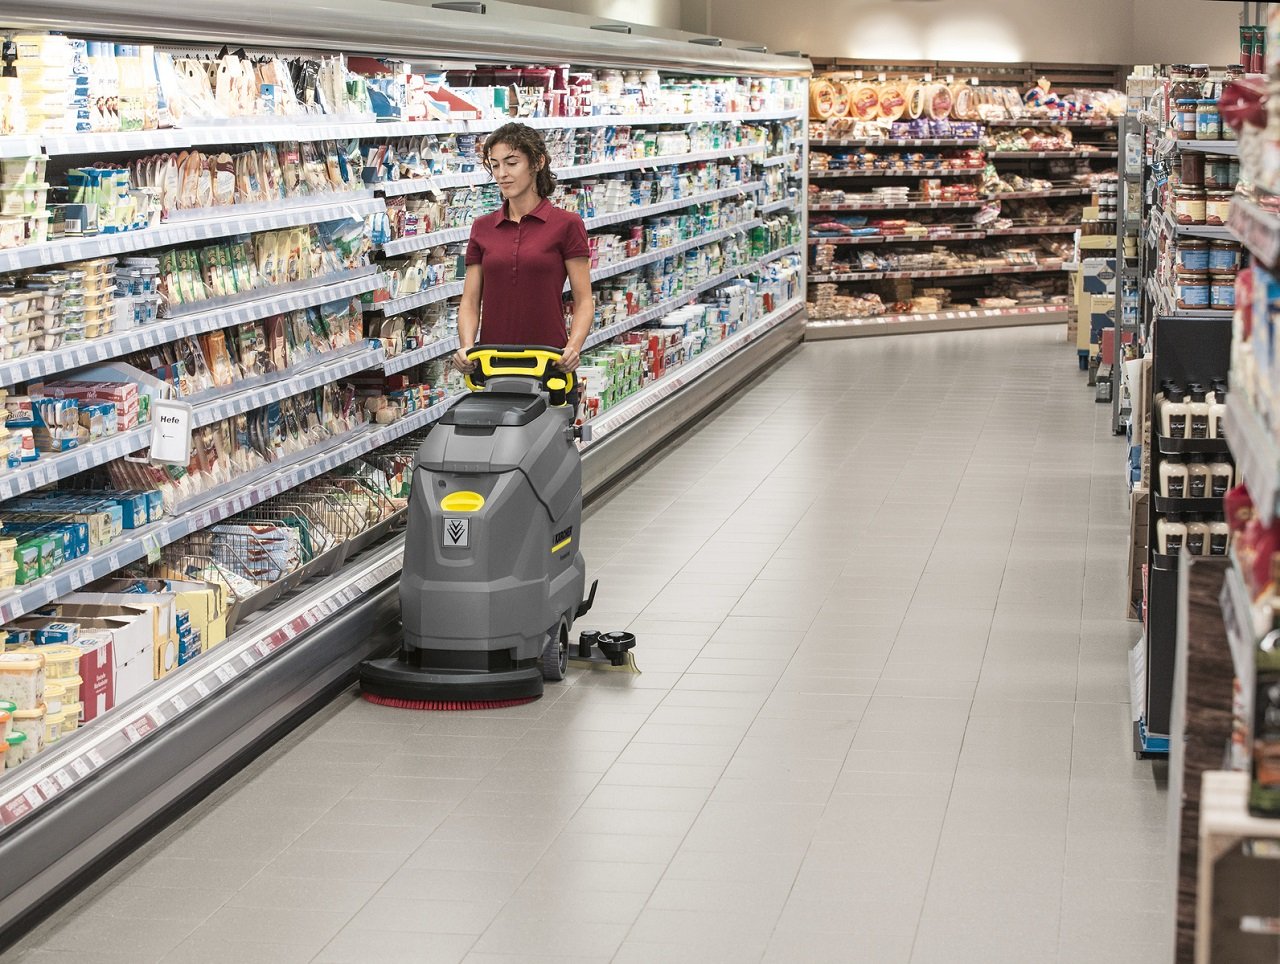 czyszczenie podłogi w supermarkecie przy pomocy szorowarki automatycznej Karcher BD 50/50